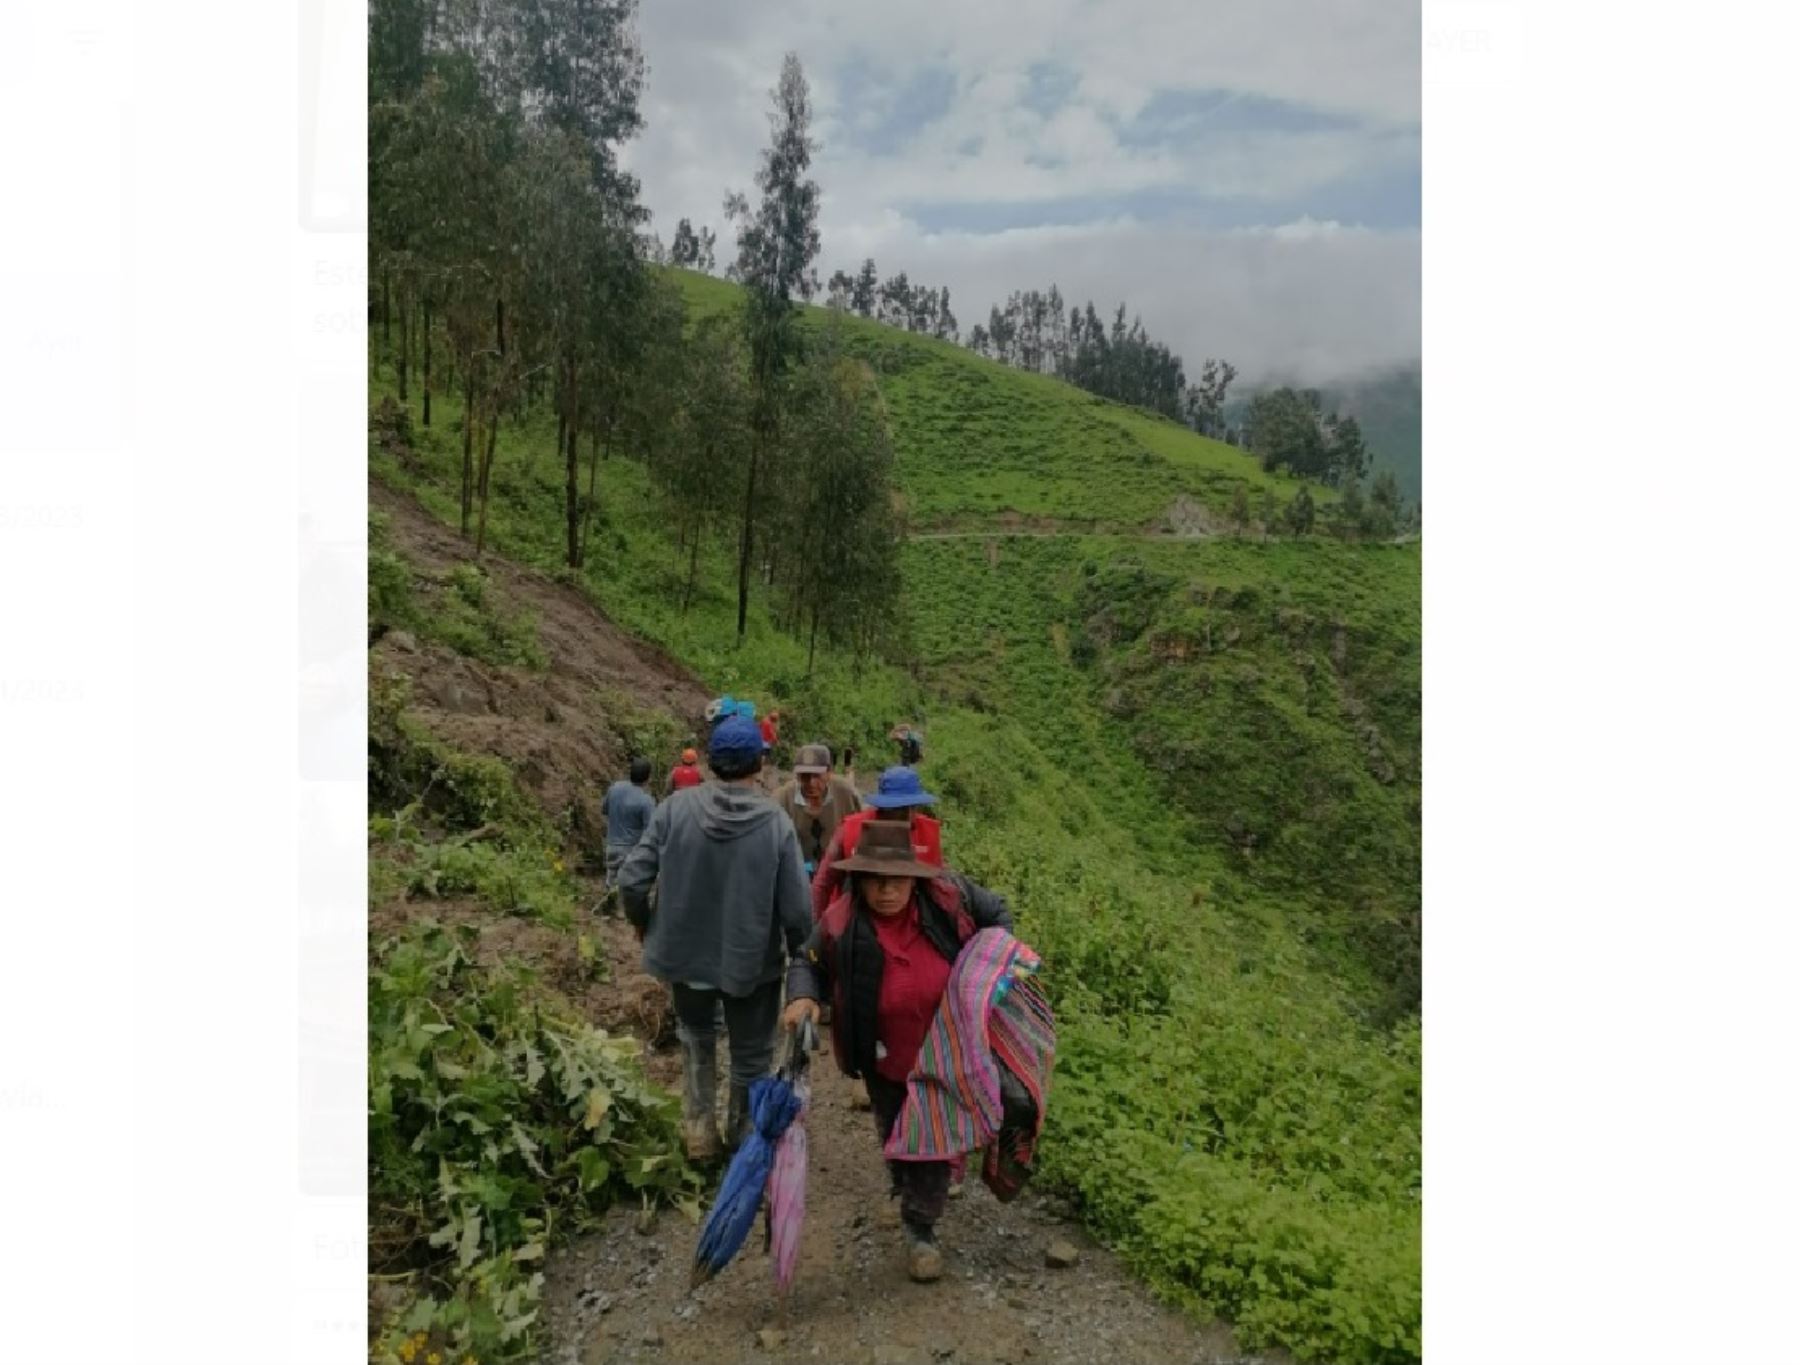 Decenas de pobladores del distrito de Querco, en Huancavelica, son evacuados ante la activación de quebradas a causa de las lluvias intensas, para prevenir daños por posibles derrumbes en la zona. ANDINA/Difusión